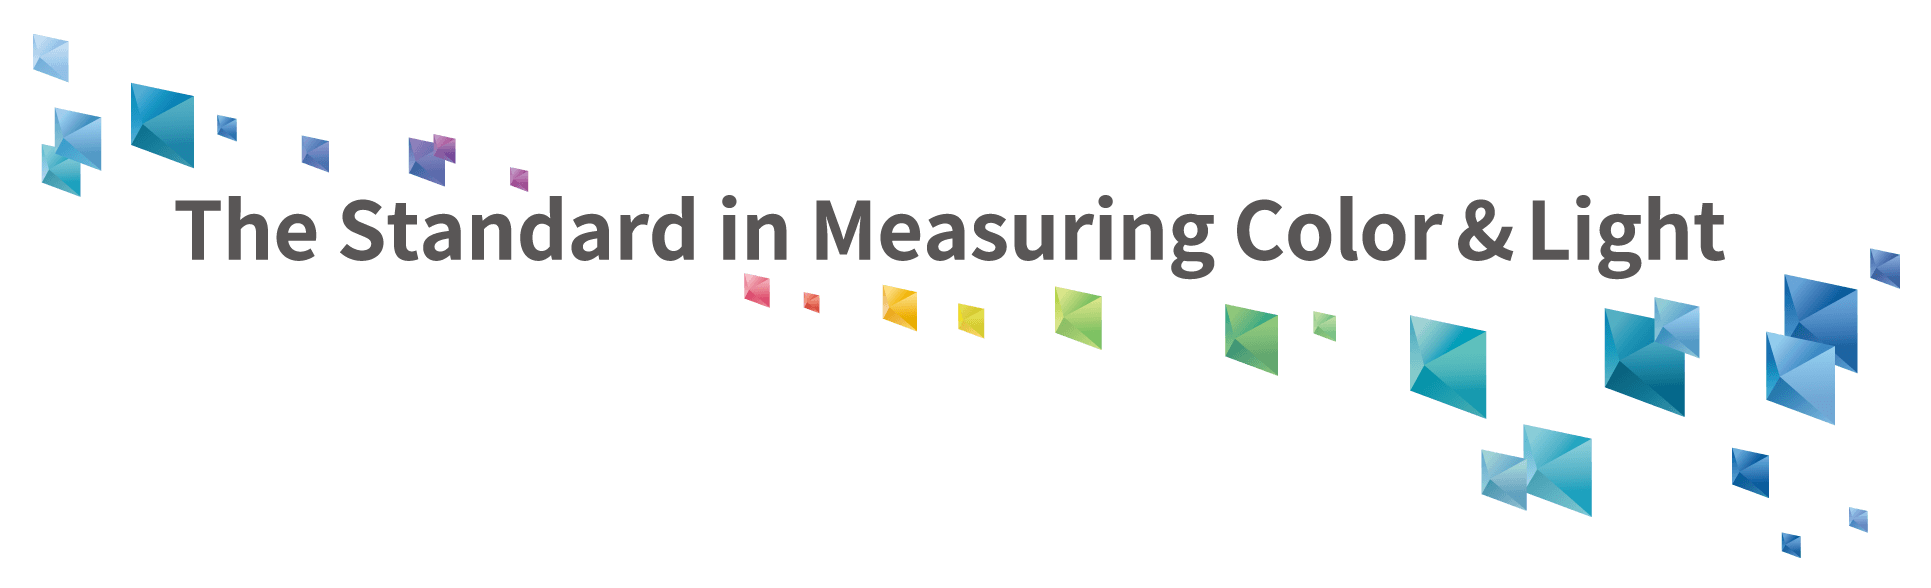 Standarden för mätning av färg och ljus